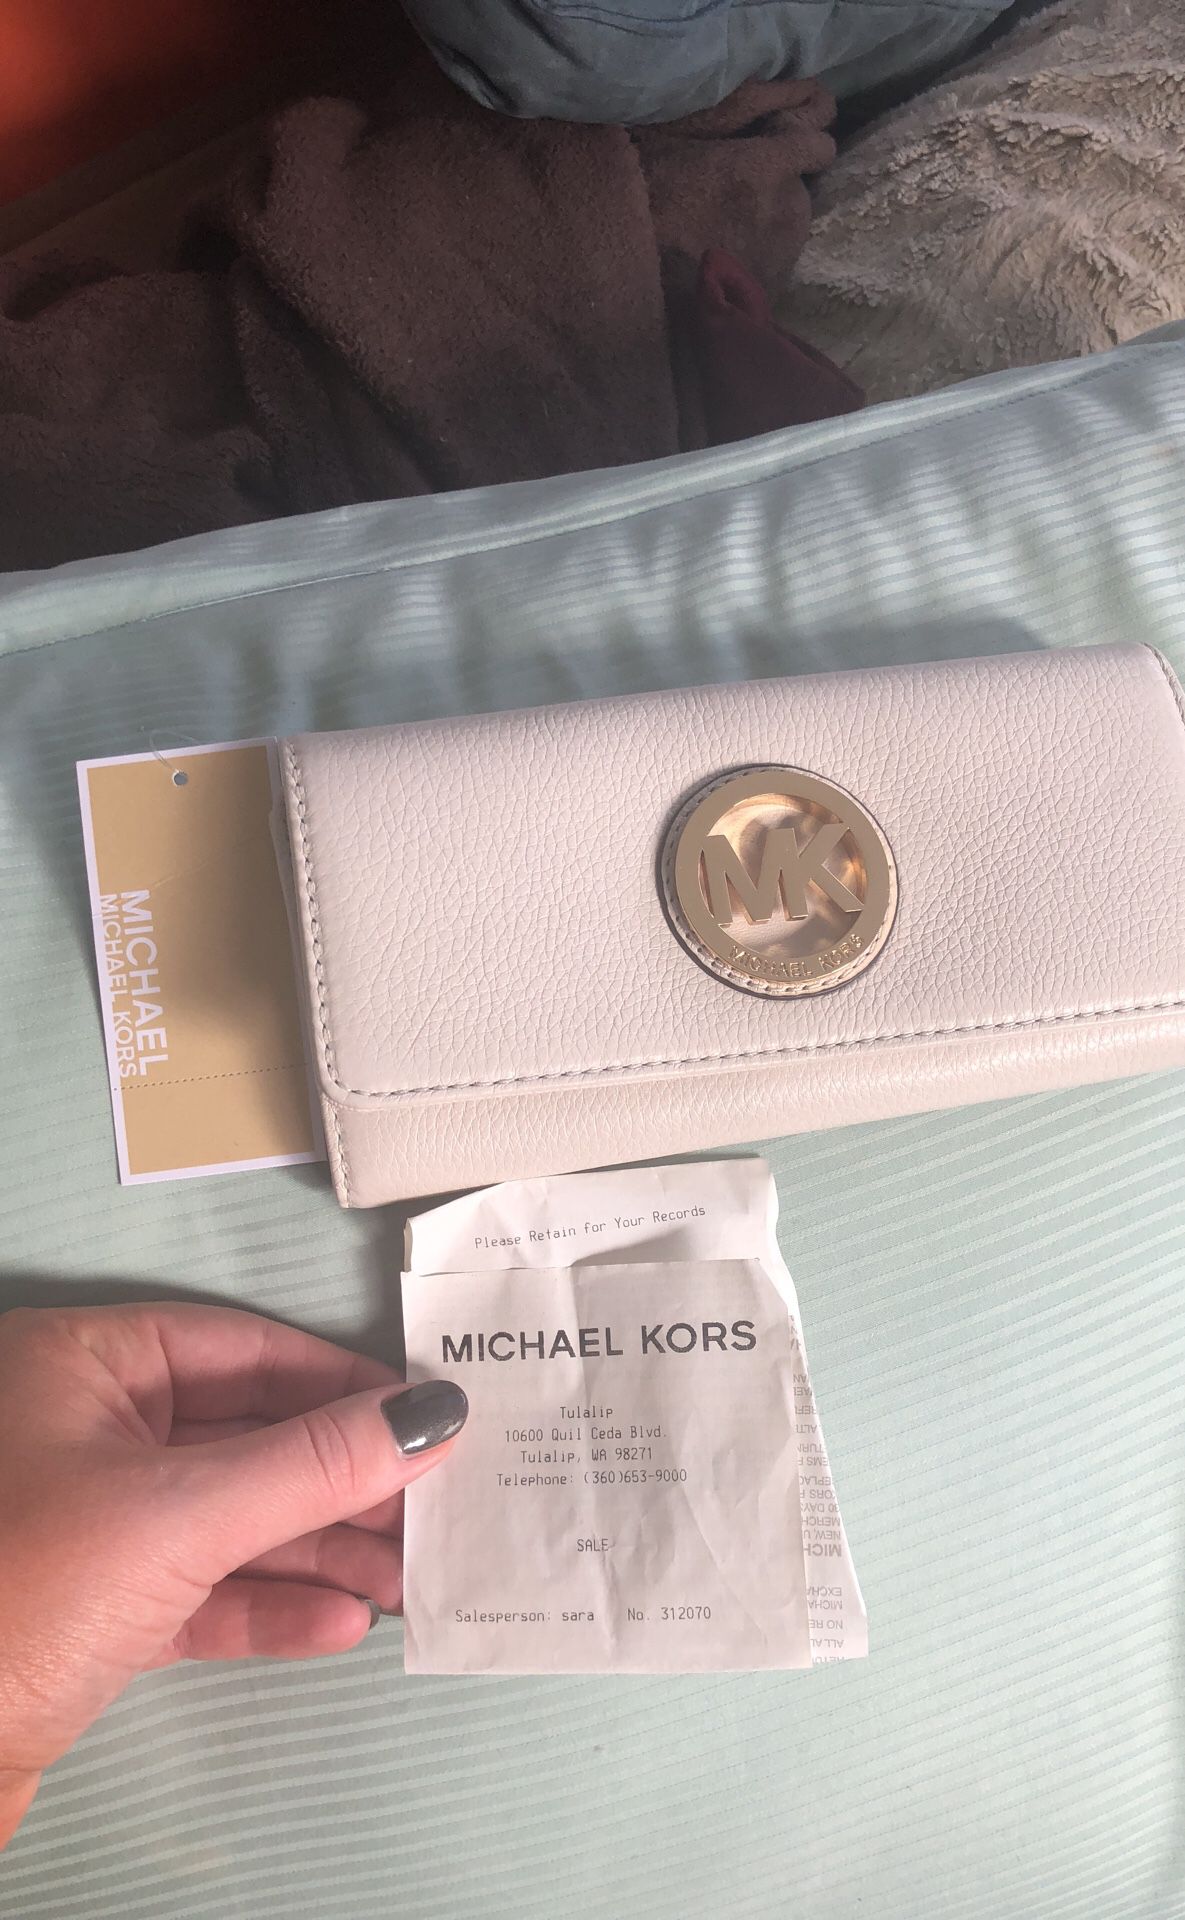 NEW Michael Kors wallet for Sale in Seattle, WA - OfferUp